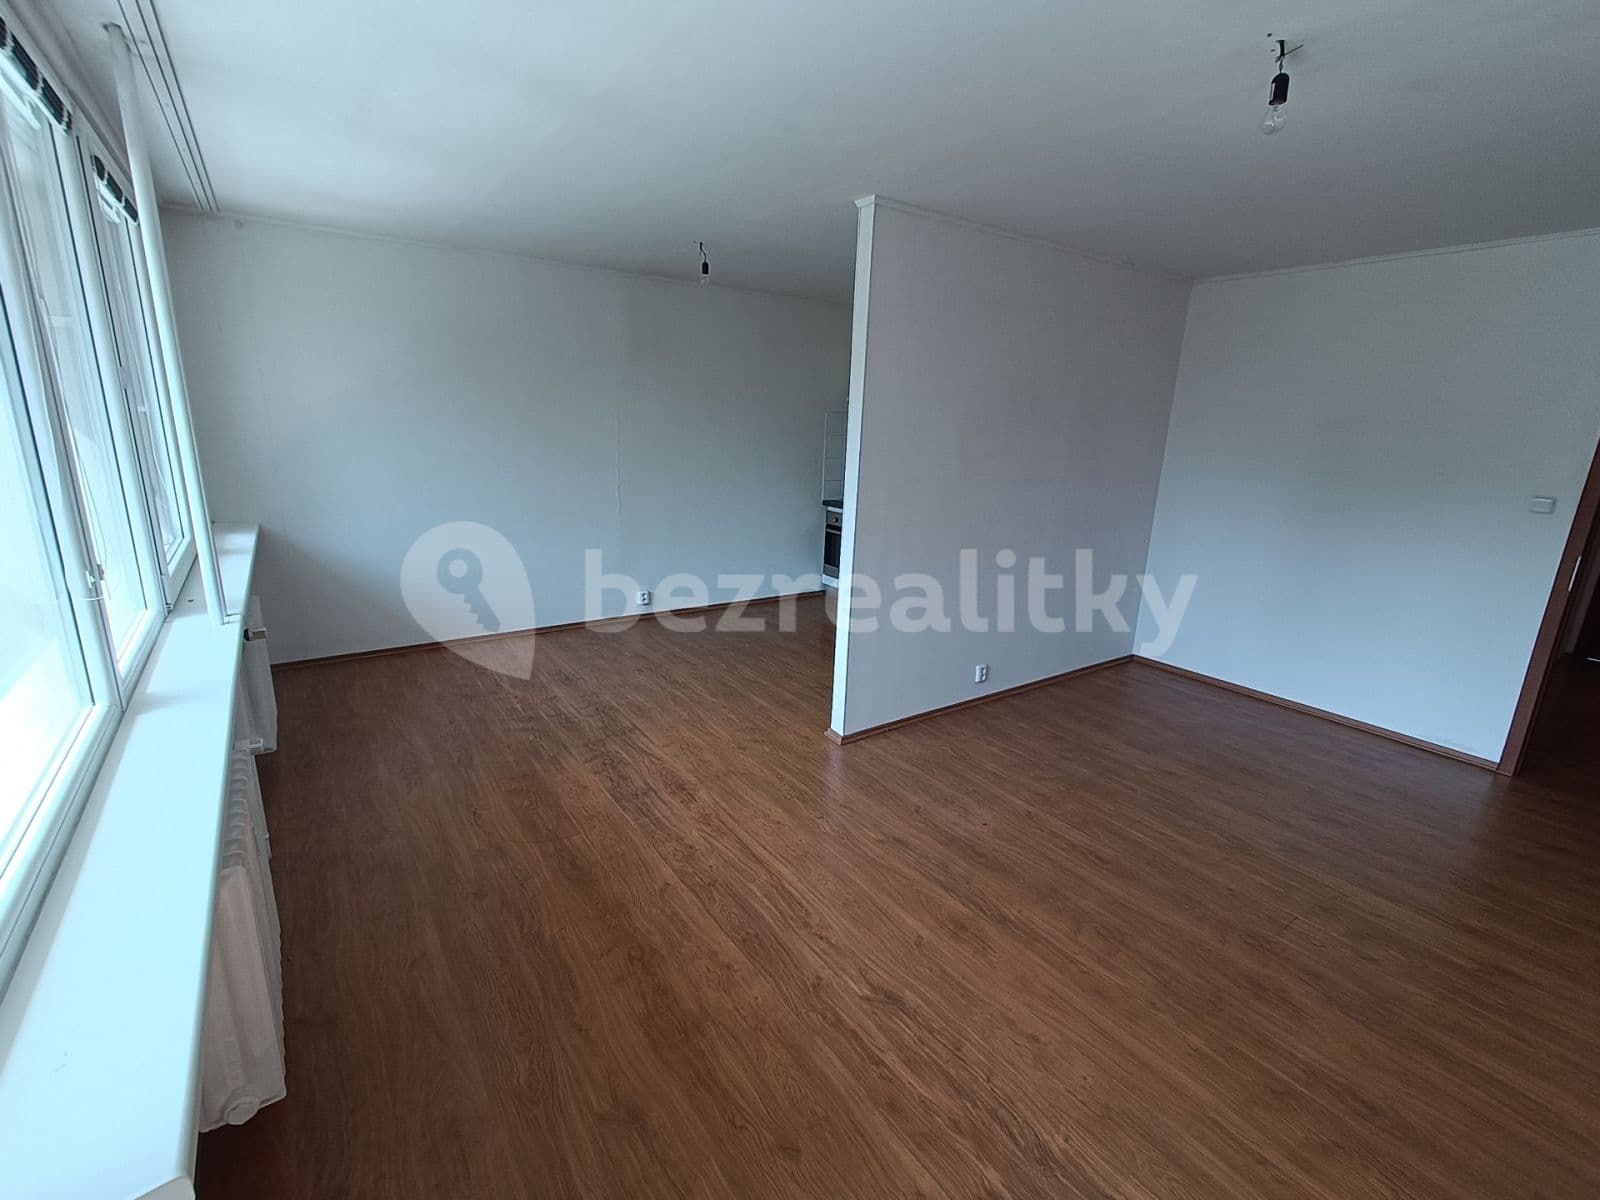 2 bedroom with open-plan kitchen flat to rent, 71 m², Novodvorská, Prague, Prague